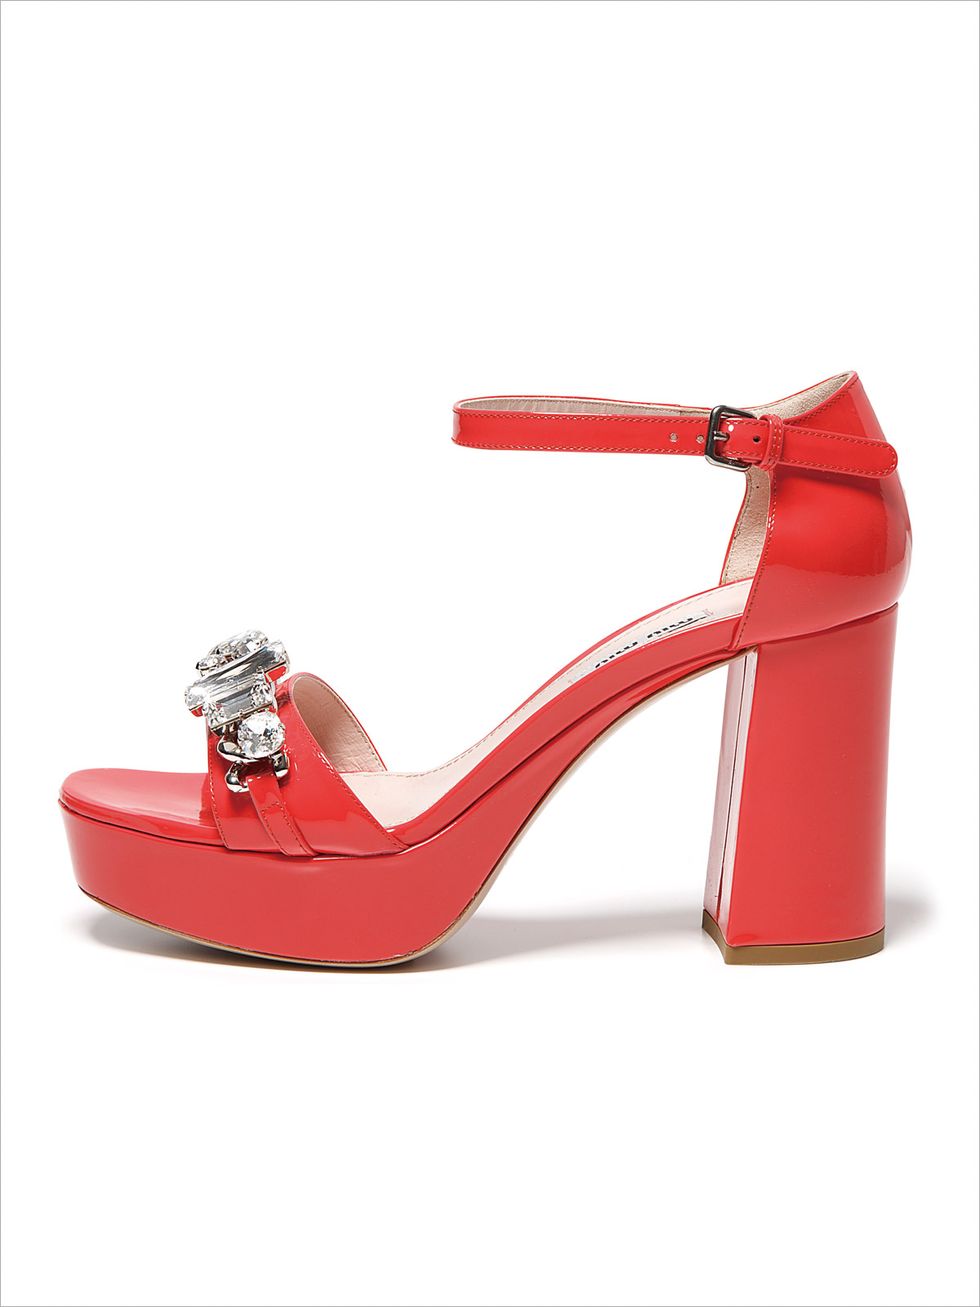 Footwear, High heels, Red, Sandal, Fashion accessory, Basic pump, Carmine, Fashion, Bridal shoe, Beige, 